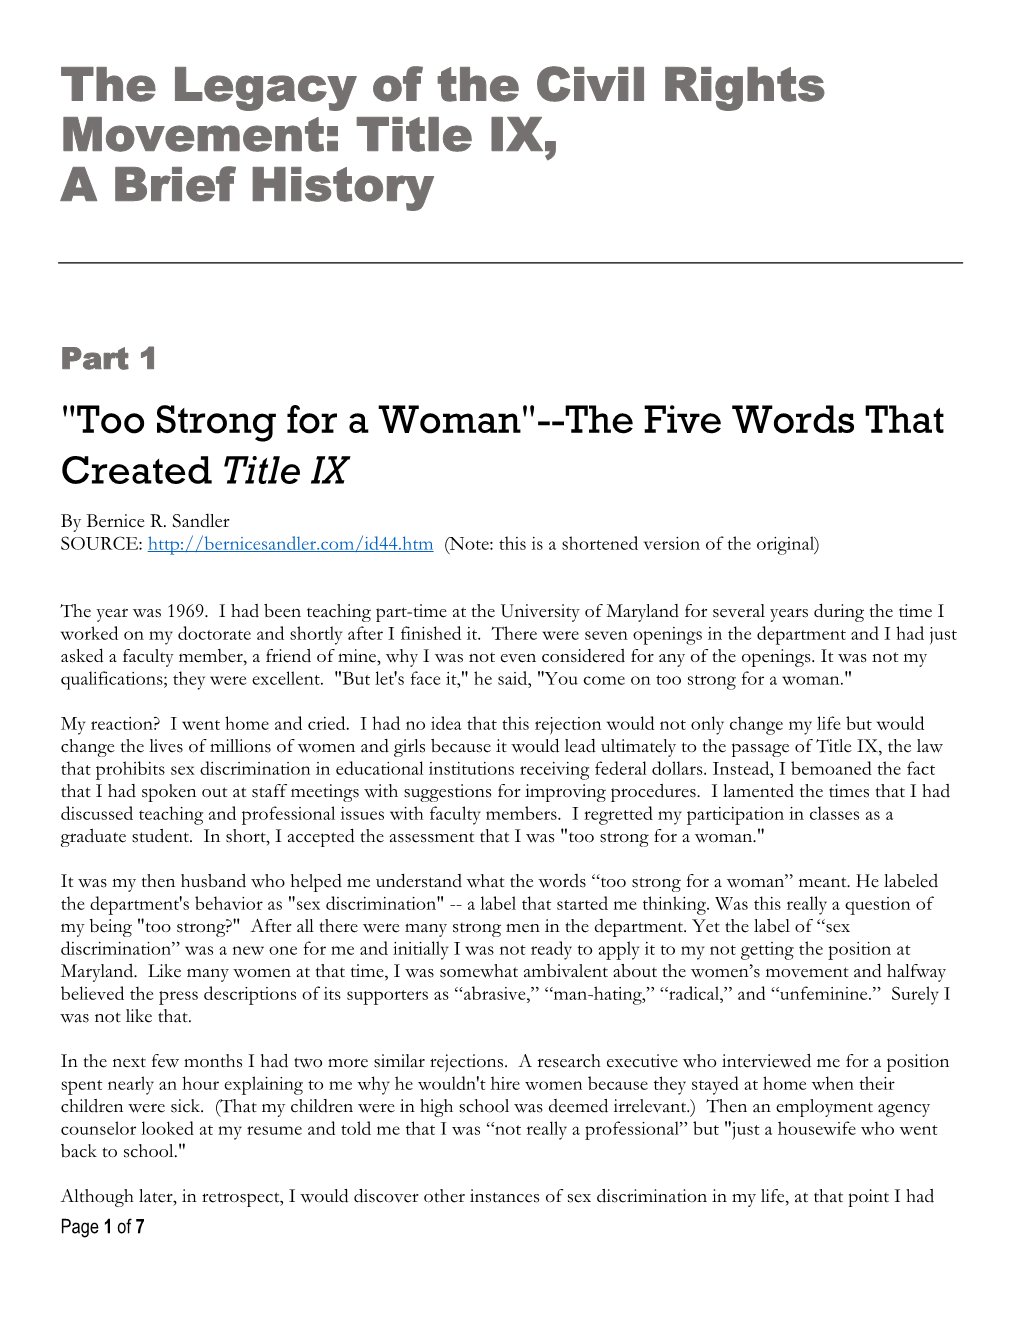 Title IX, a Brief History